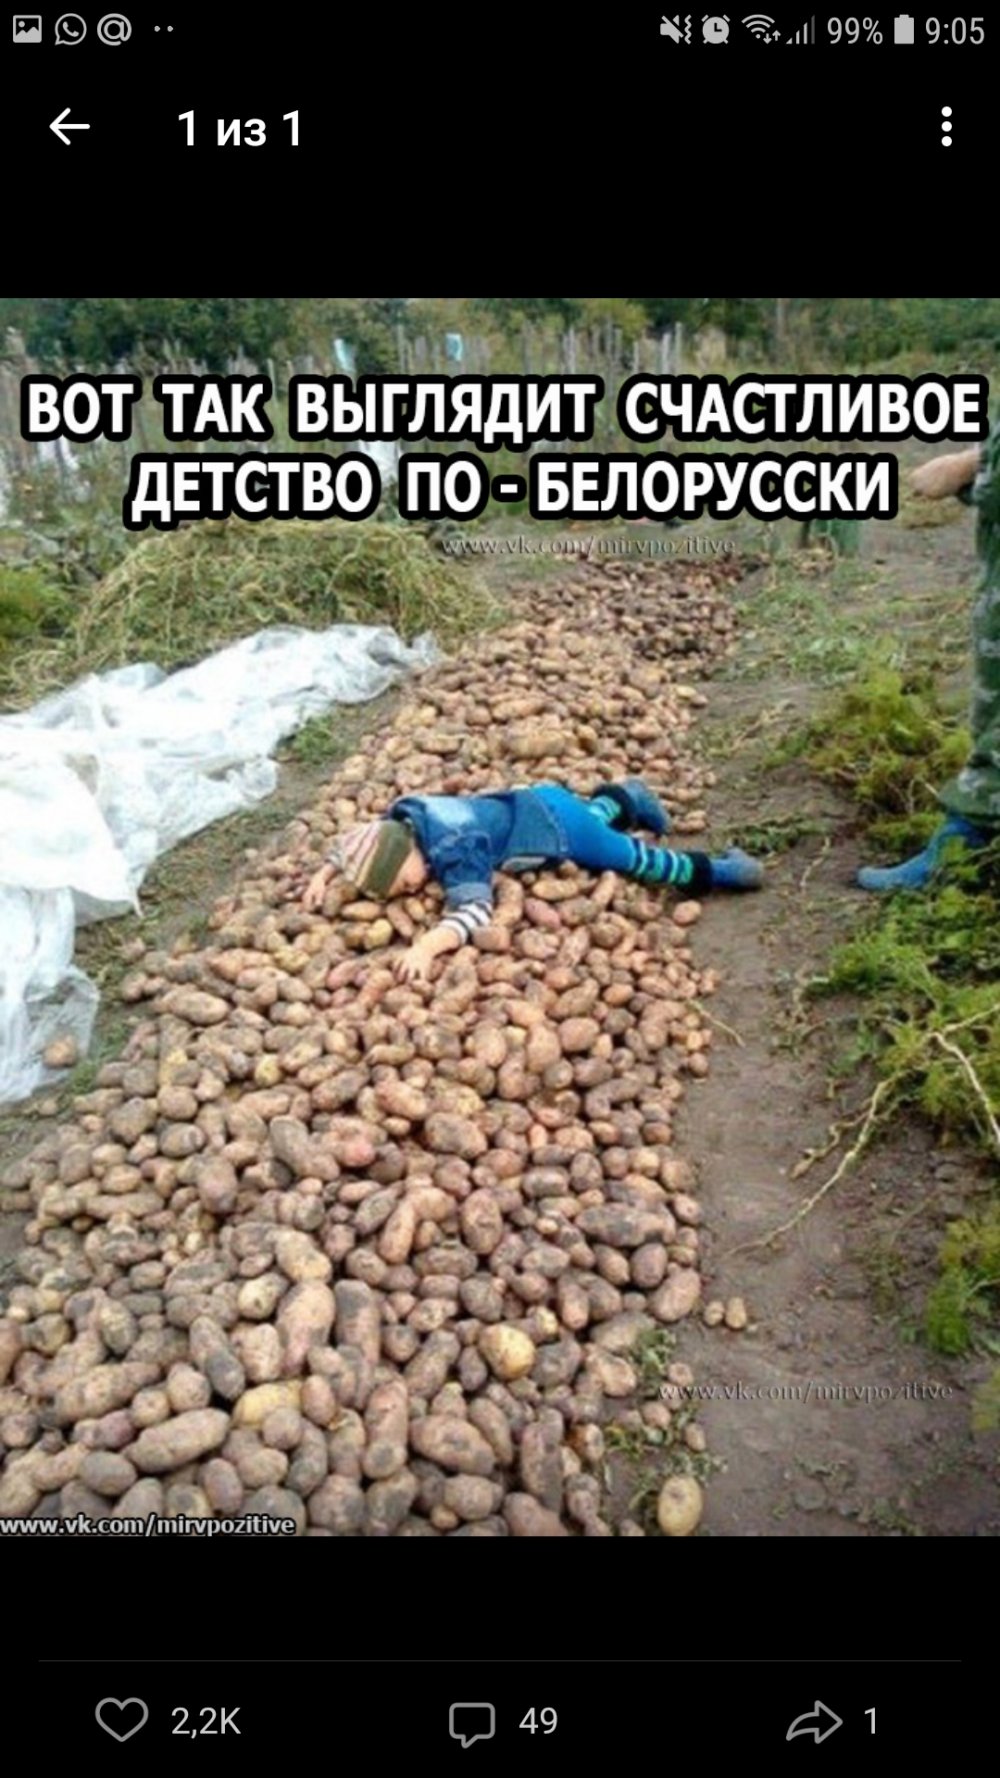 Шутки про копание картошки